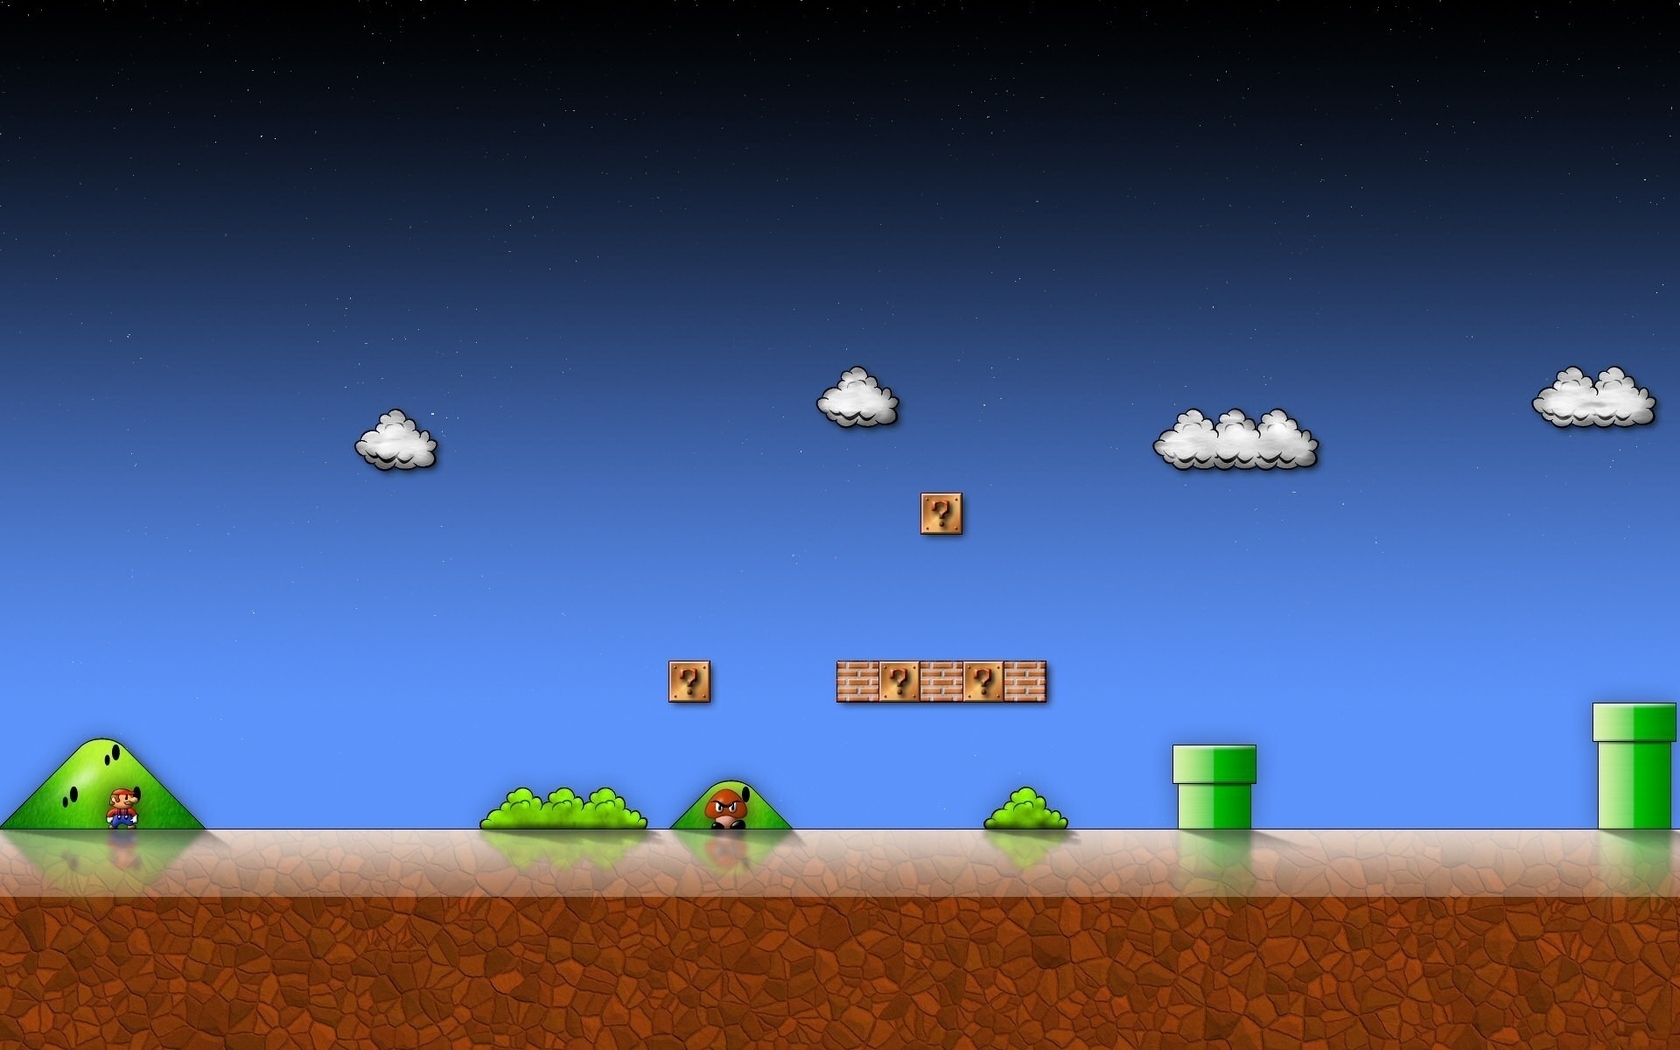 Картинка: Super Mario Bros, игра, Гумба, враг, трубы, канализация, вопросы, облака, Марио, братья